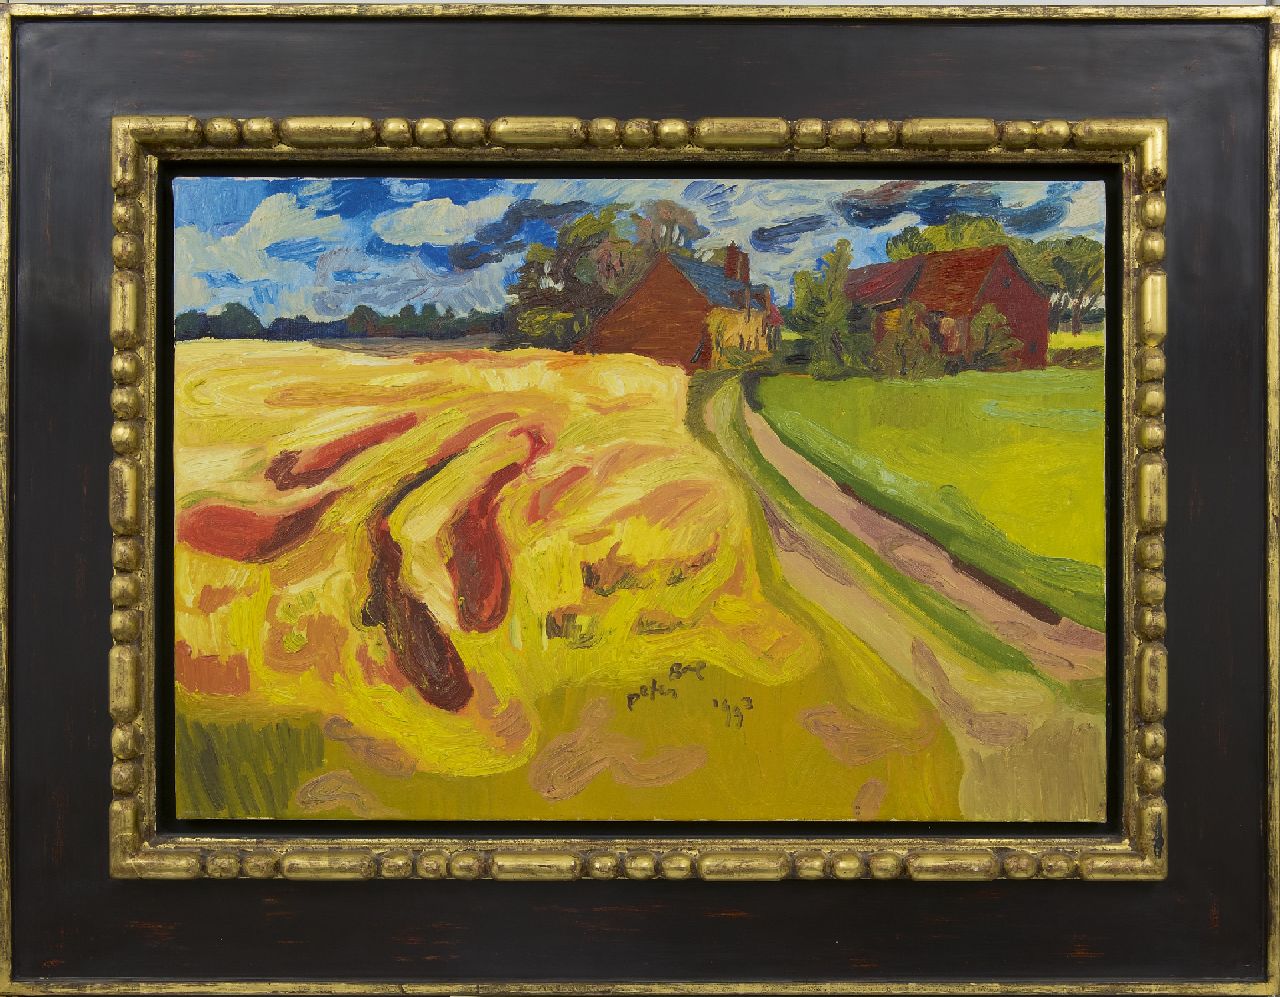 Bol P.P.J.  | 'Peter' Paul Jan Bol, Korenveld met boerderijen, olieverf op doek 56,3 x 81,2 cm, gesigneerd rechtsonder en gedateerd 1993